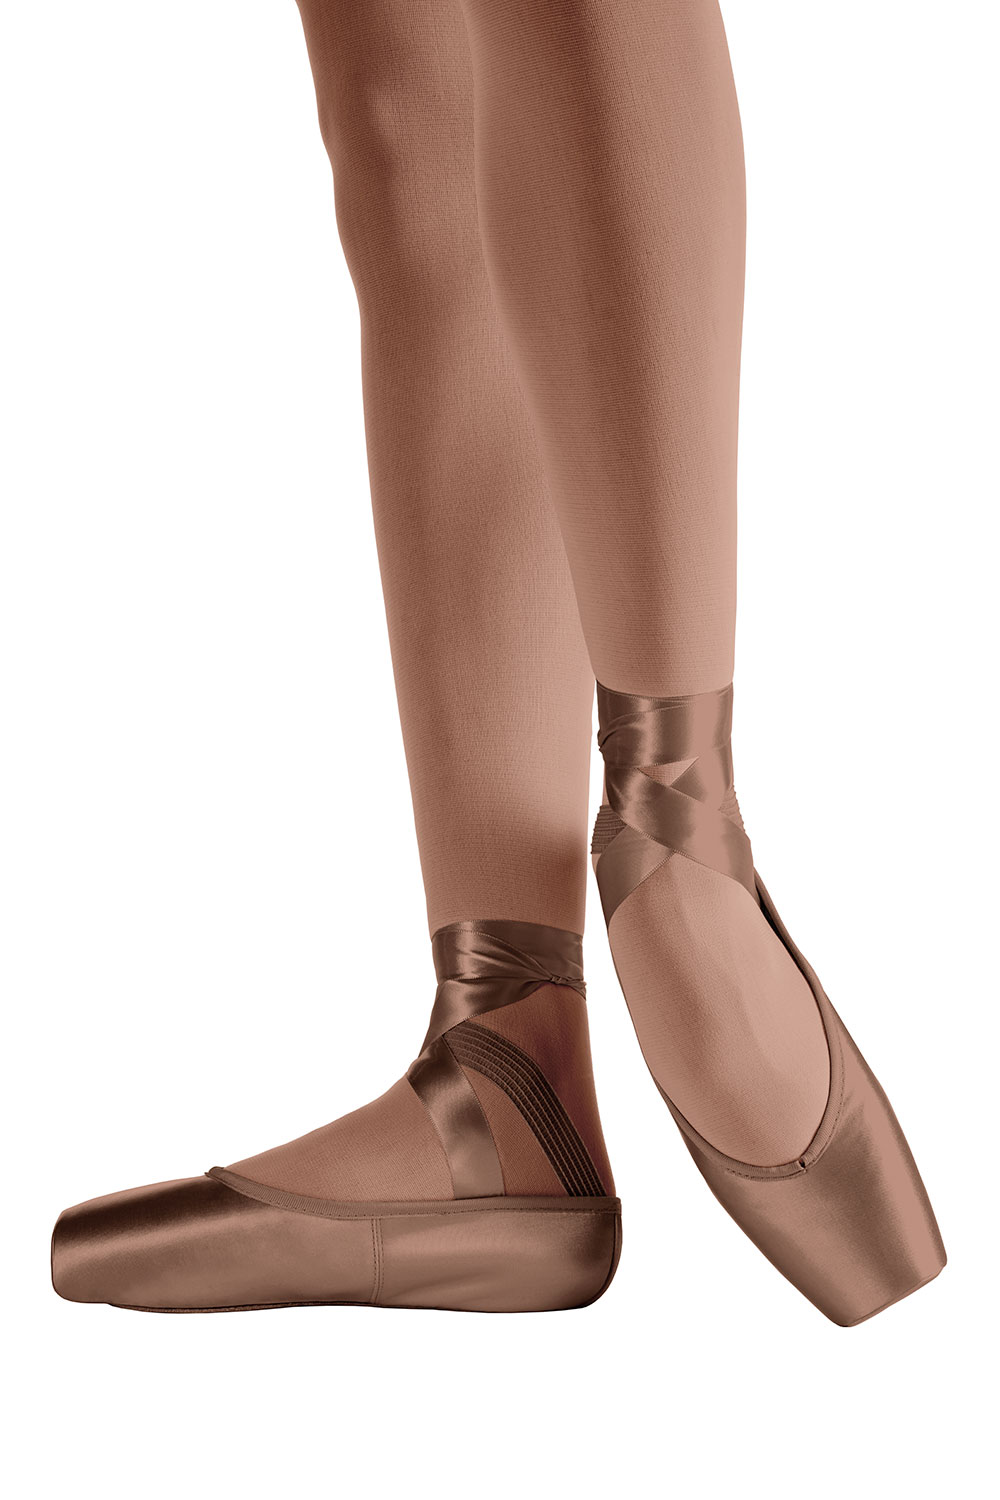 Ballet Dance Shoes Chausson Danse Bailarinas Zapatos Puntas De